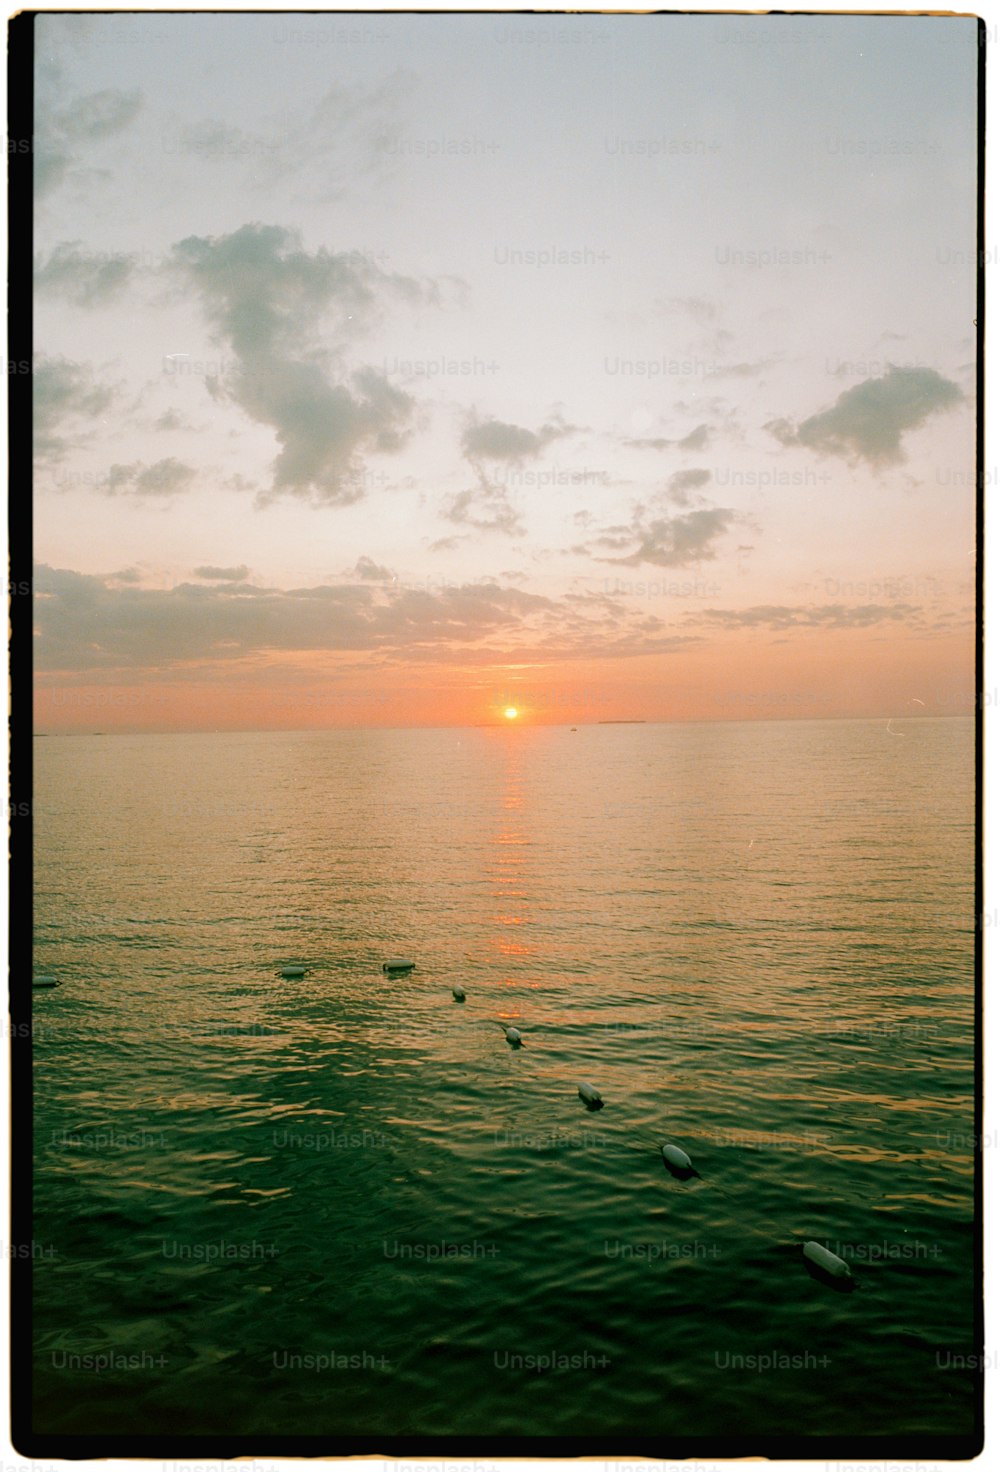 O sol está se pondo sobre o oceano com patos nadando na água